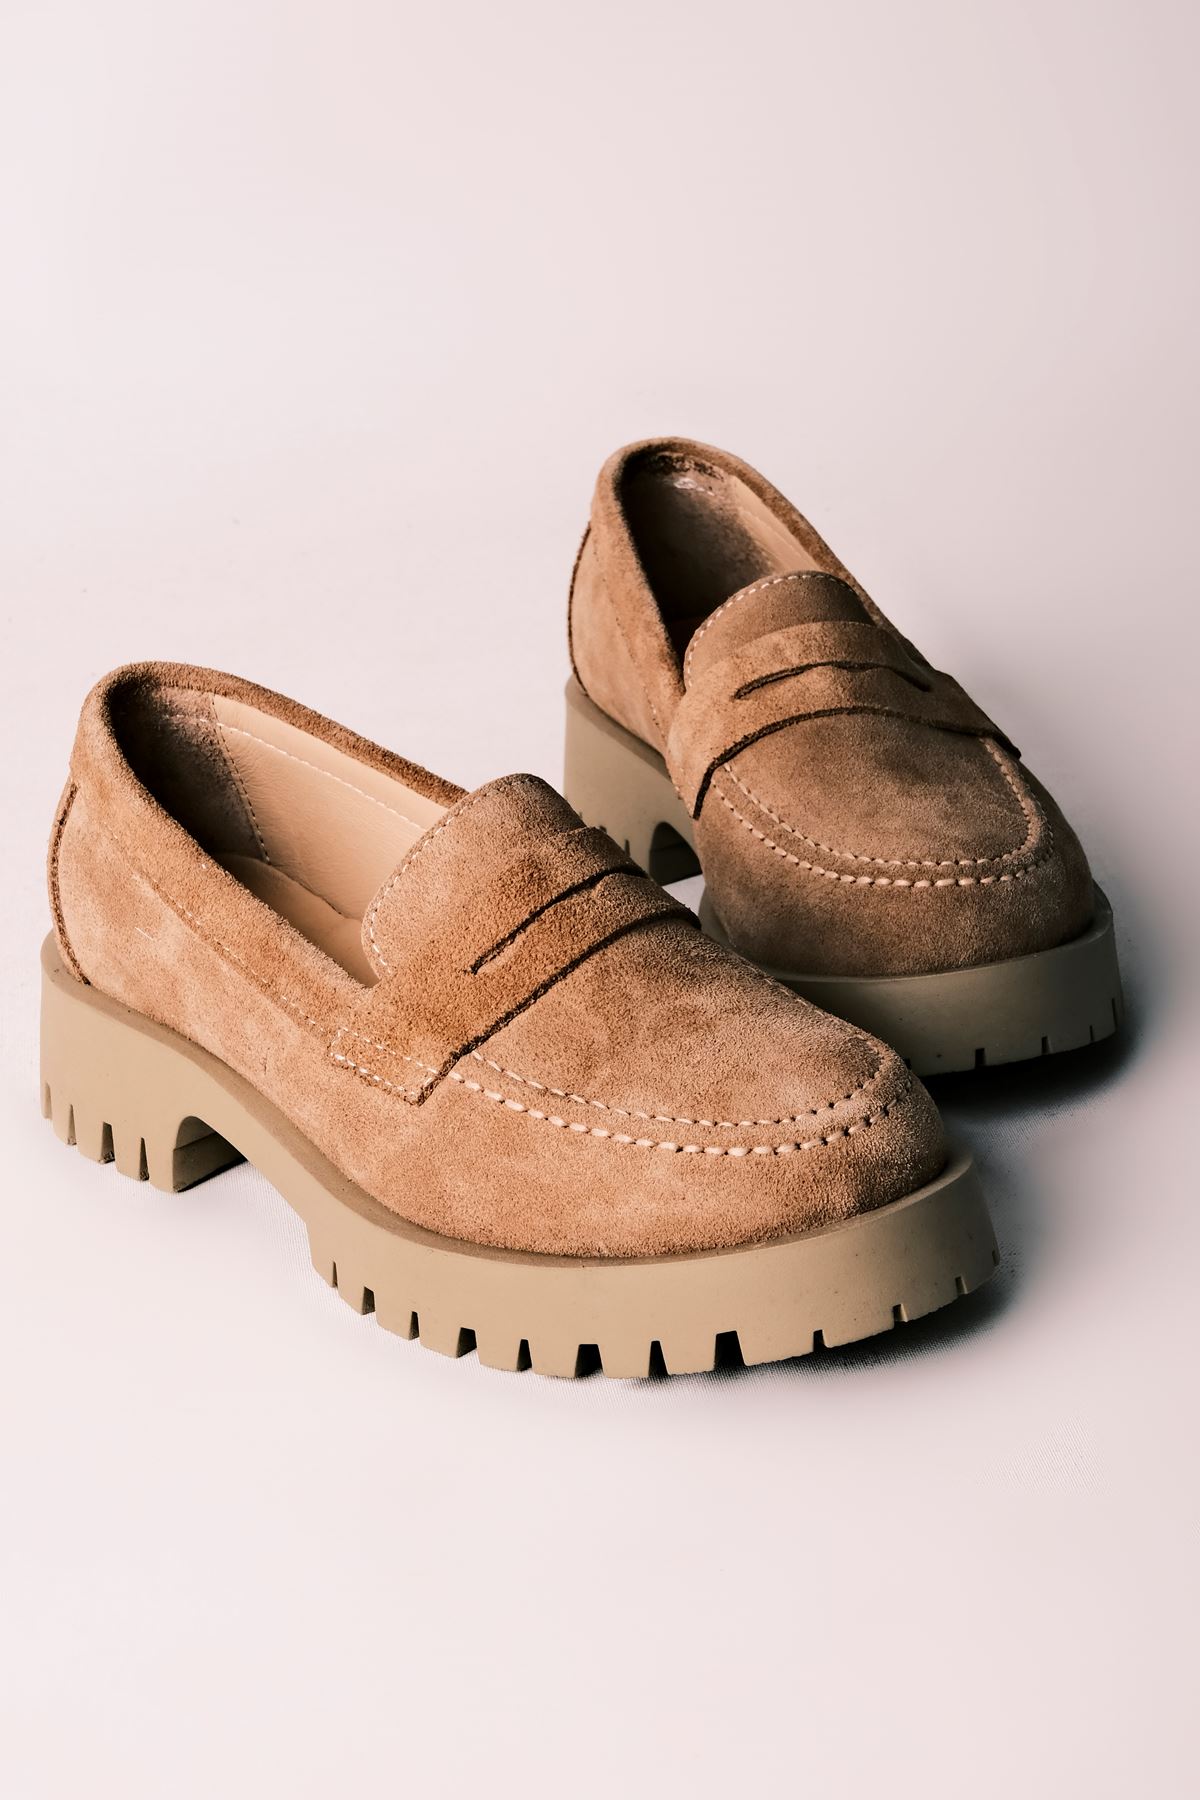 Deva Kadın Hakiki Deri Oxford Ayakkabı Düz Model-S.VİZYON